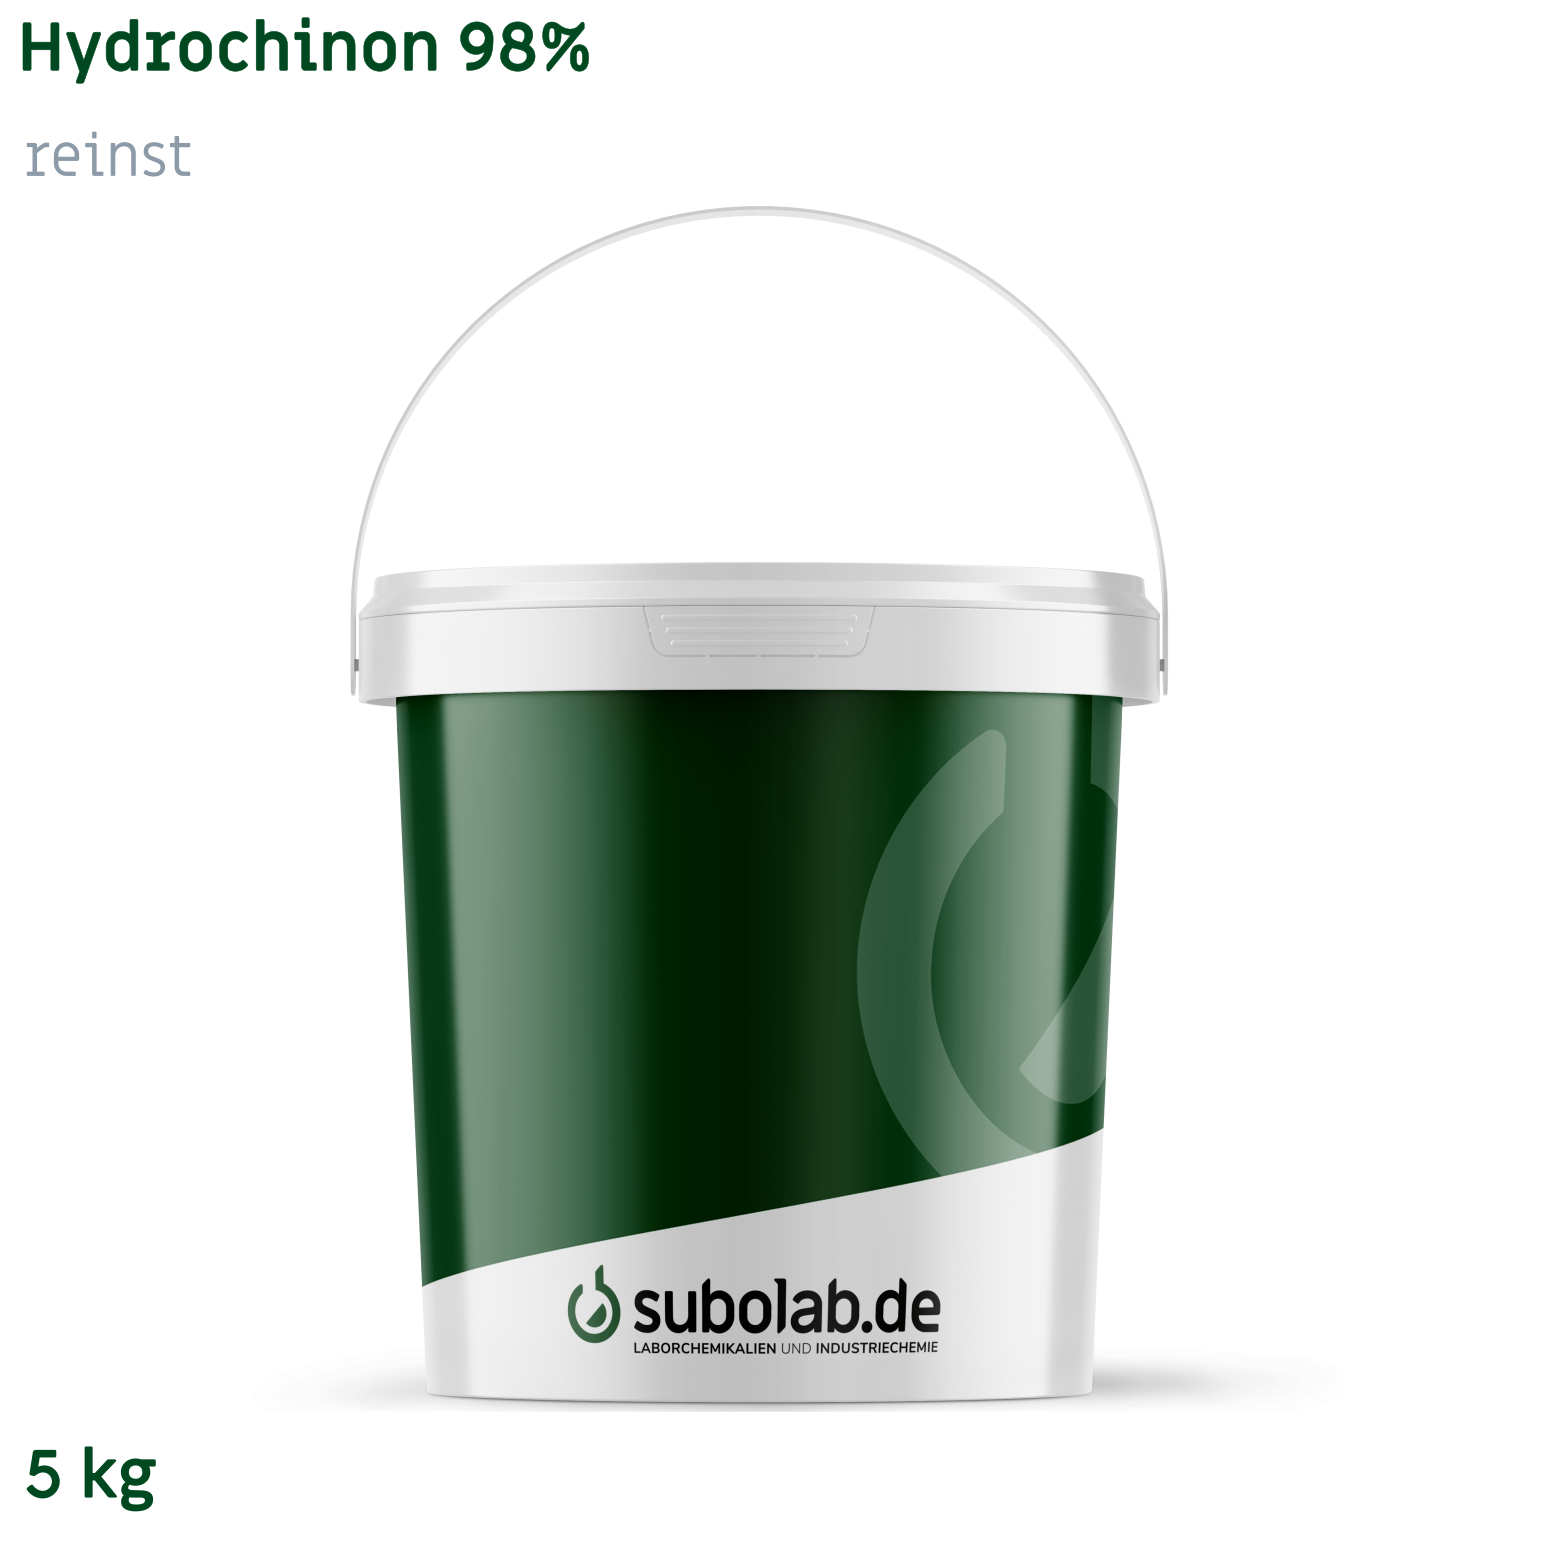 Bild von Hydrochinon 98% reinst (5 kg)